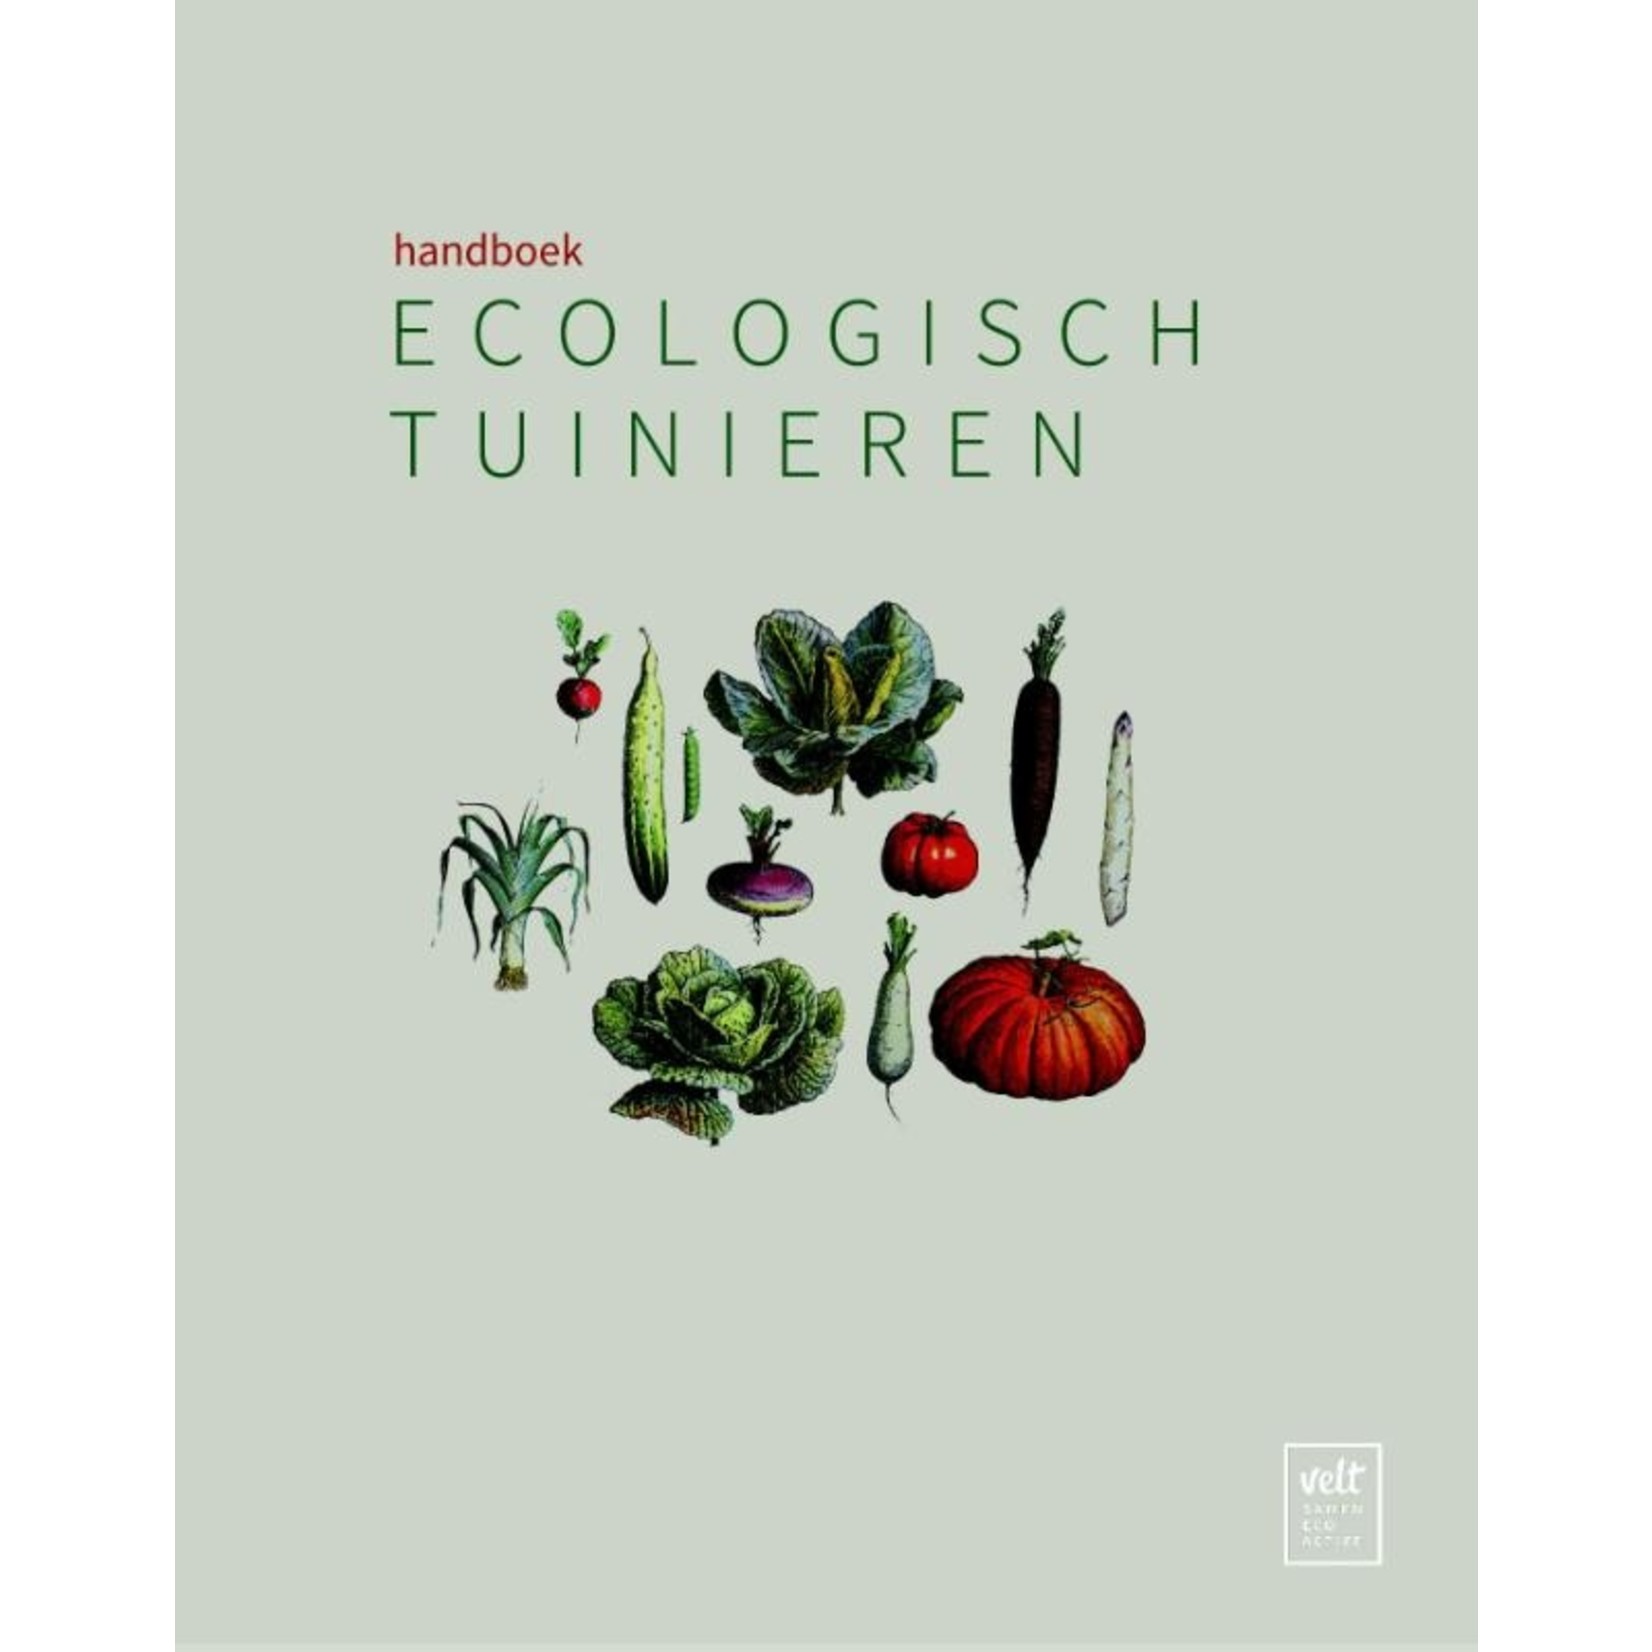 Vonk Uitgevers Handboek ecologisch tuinieren